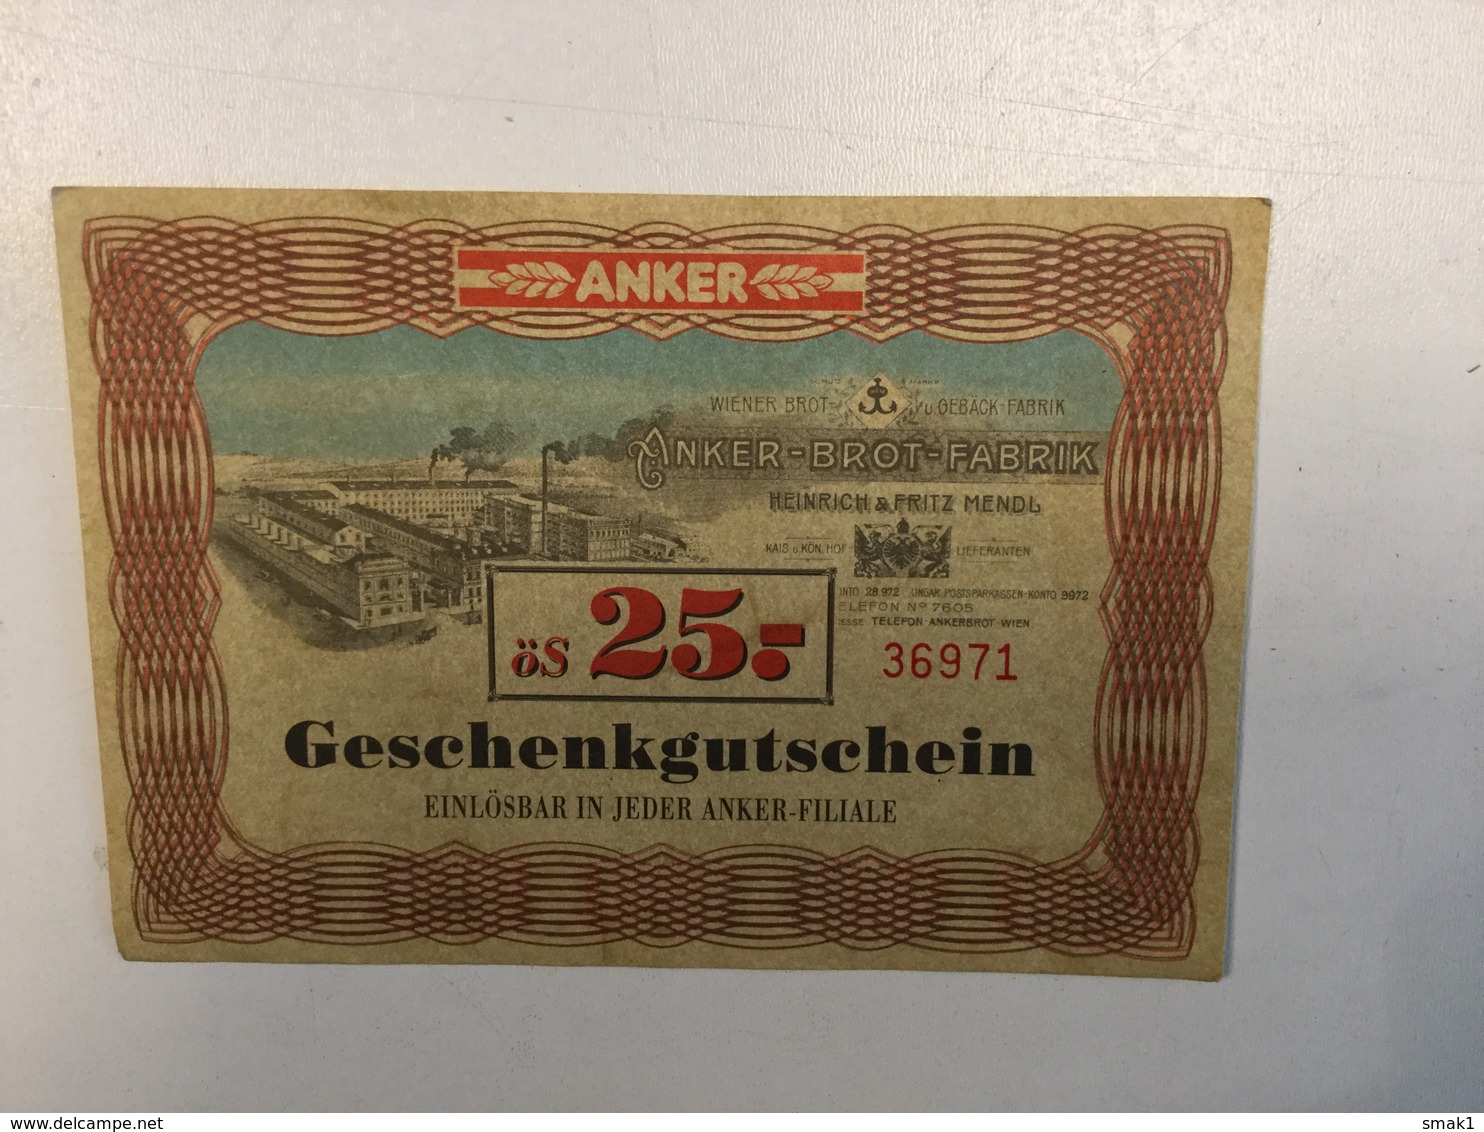 LOTTERY    ANKER BROT FABRIK  GESCHENKGUTSCHEIN   ös 25 - Lotterielose